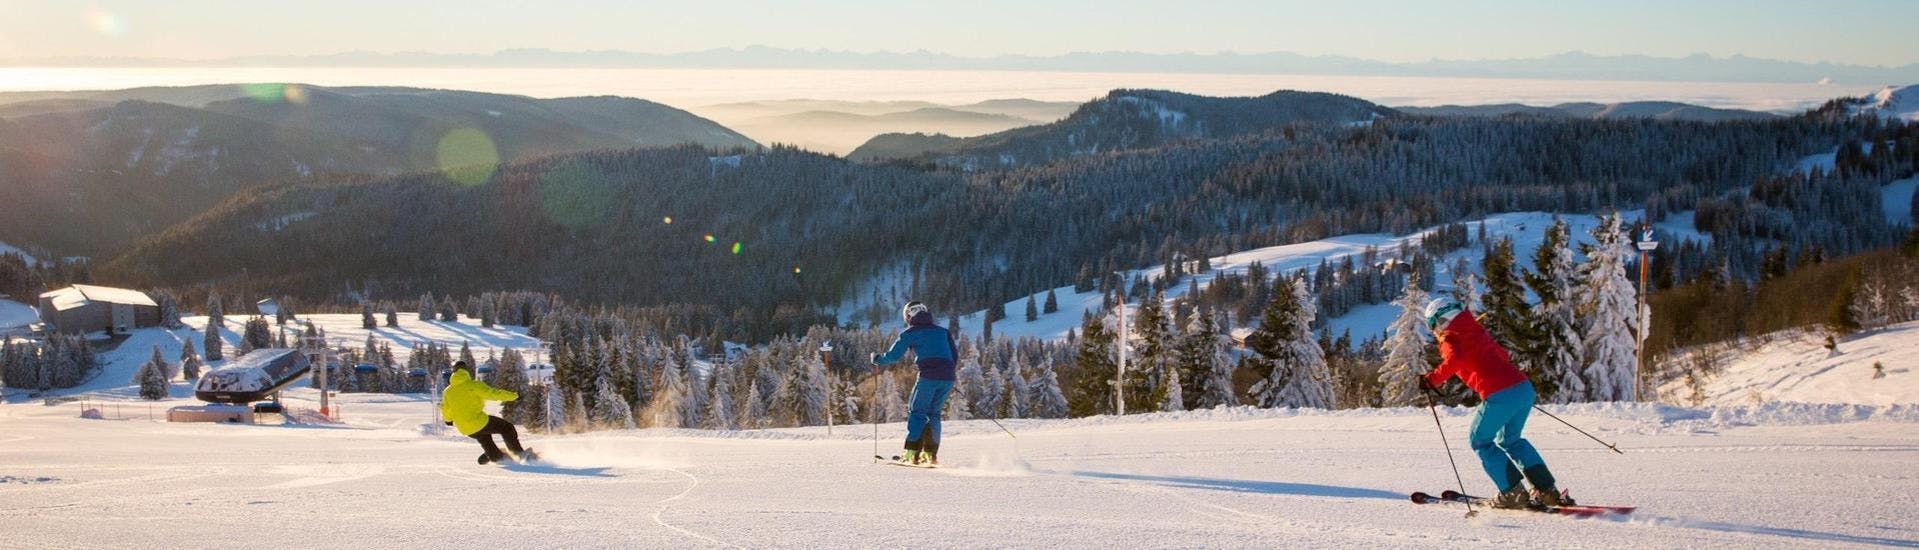 Twee skiërs en een snowboarder genieten van de zonnige witte pistes in Feldberg.